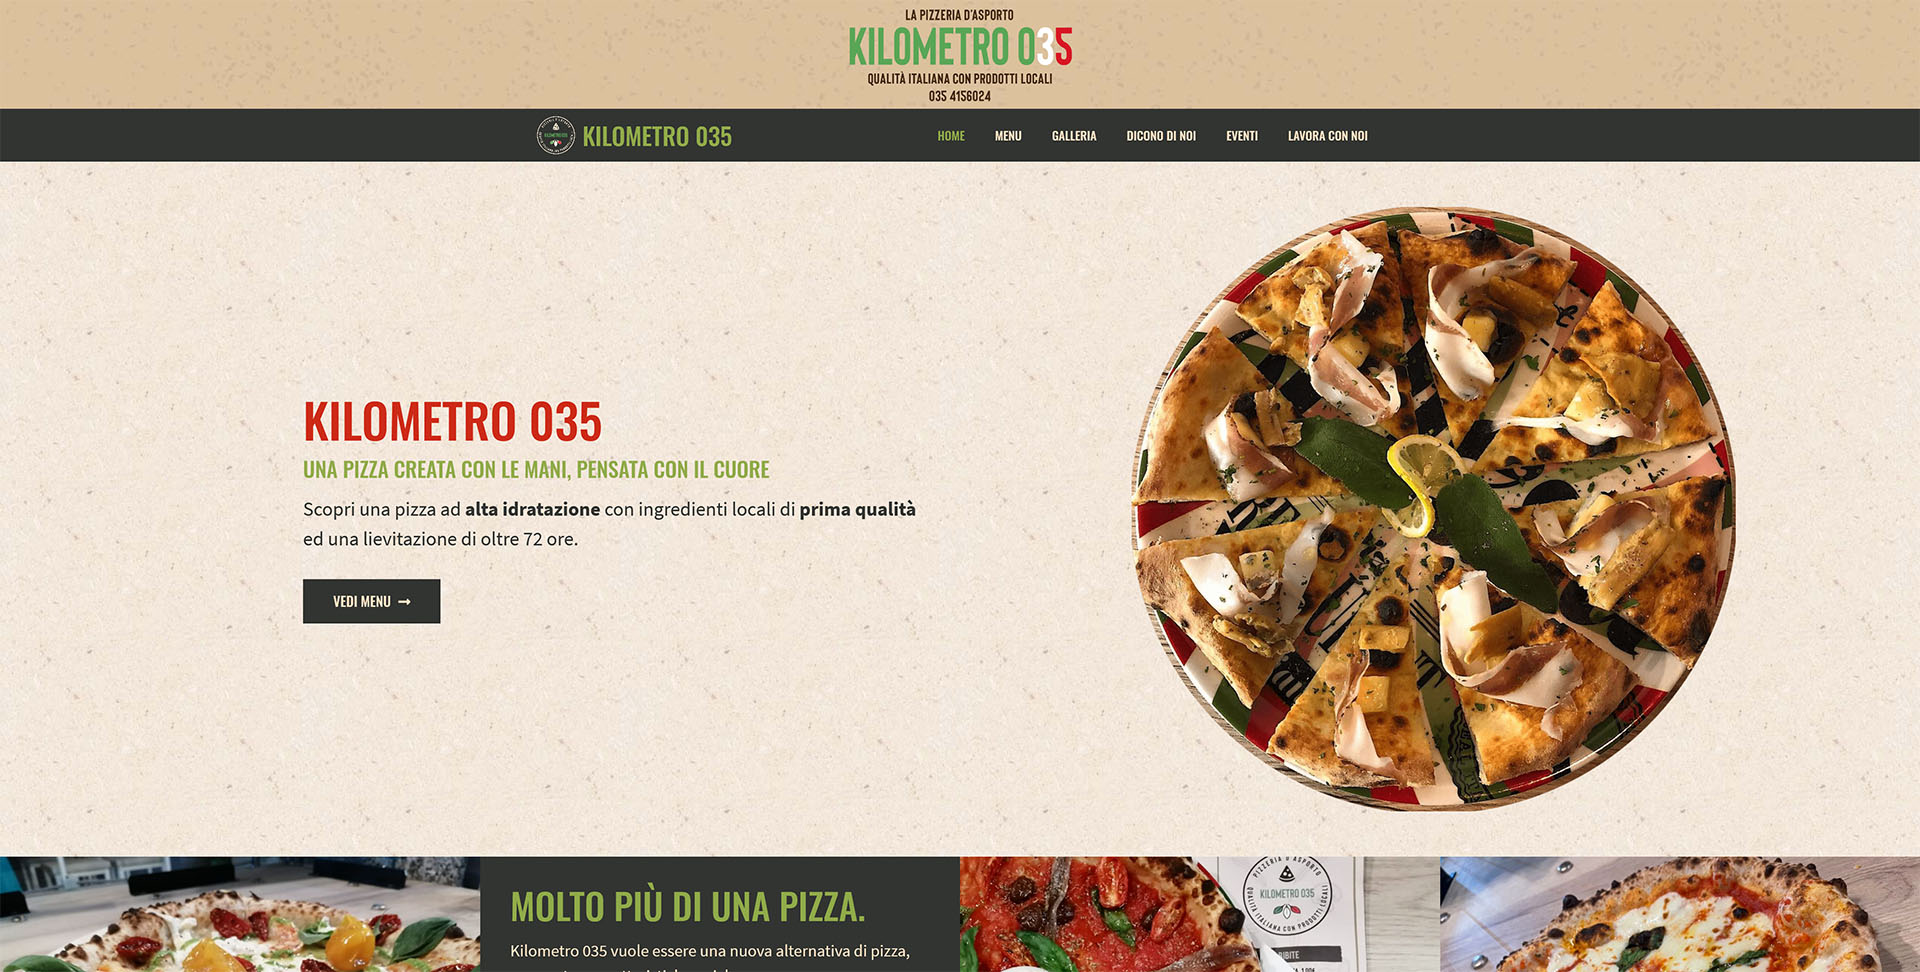 Kilometro 035 ha scelto Rational Scale Web Agency per realizzare un sito di una pizzeria di massima qualità e in slow-food